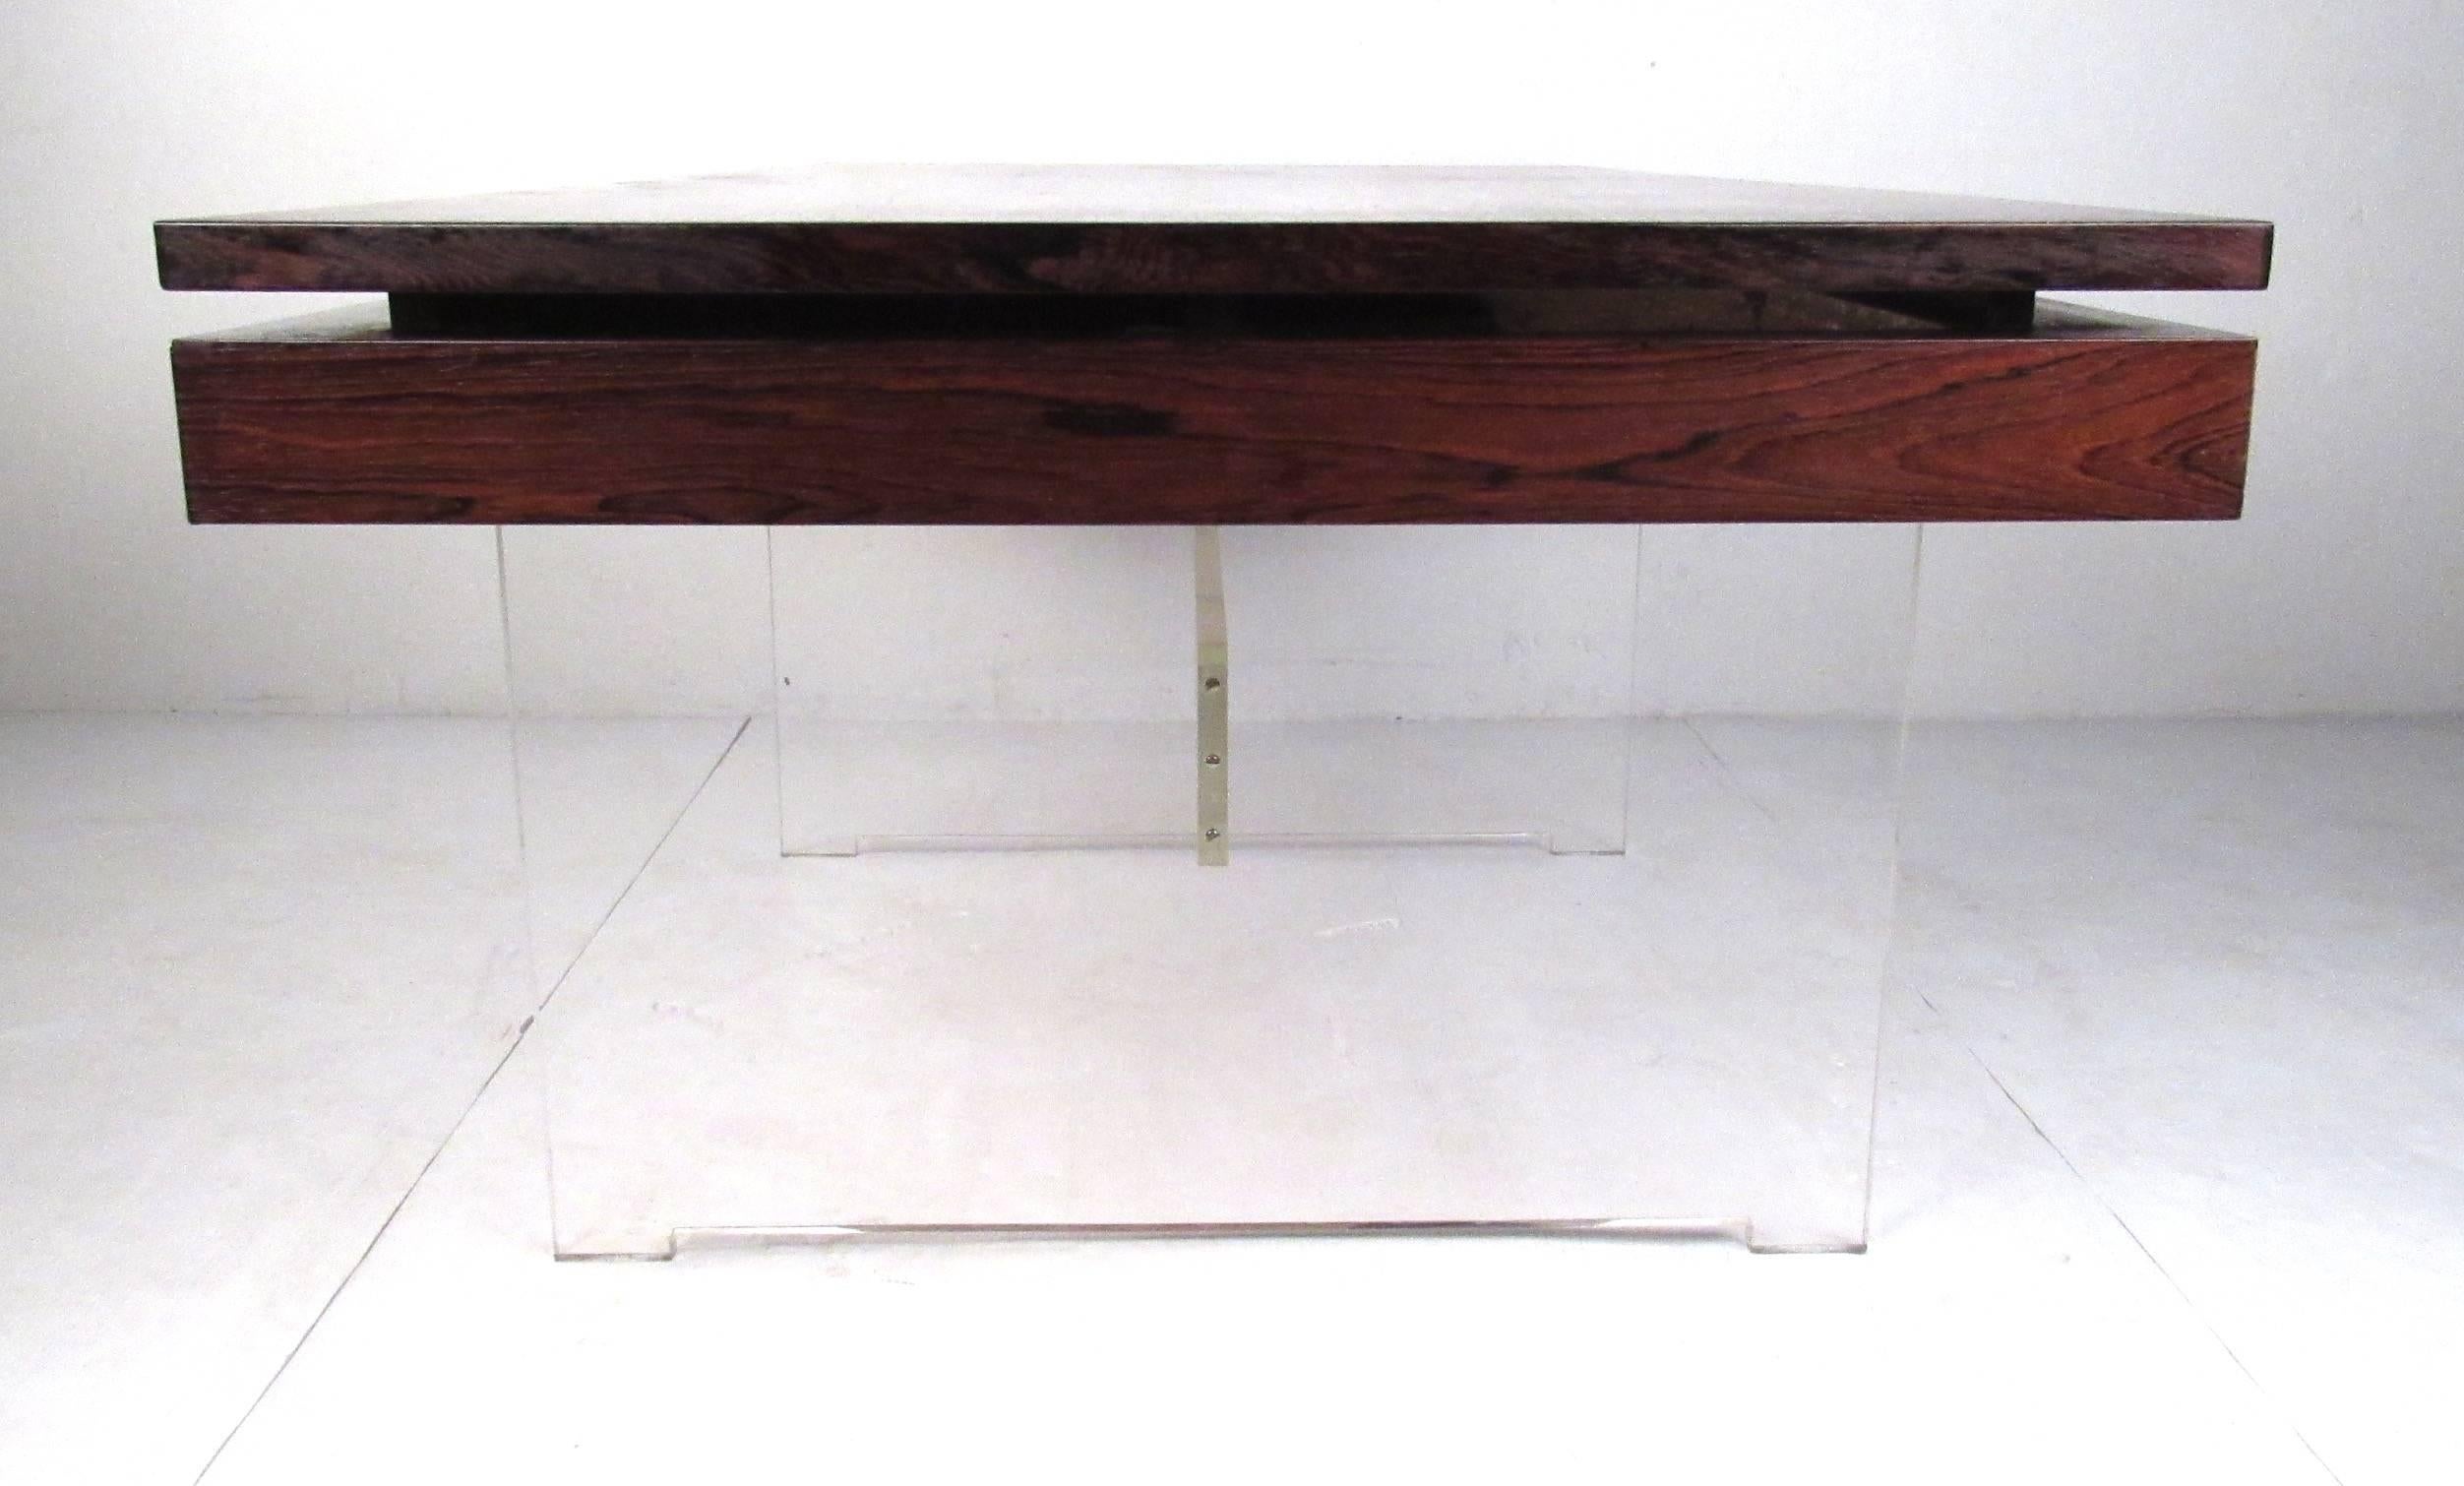 Plexiglass Danish Modern Rosewood Desk by Poul Norreklit